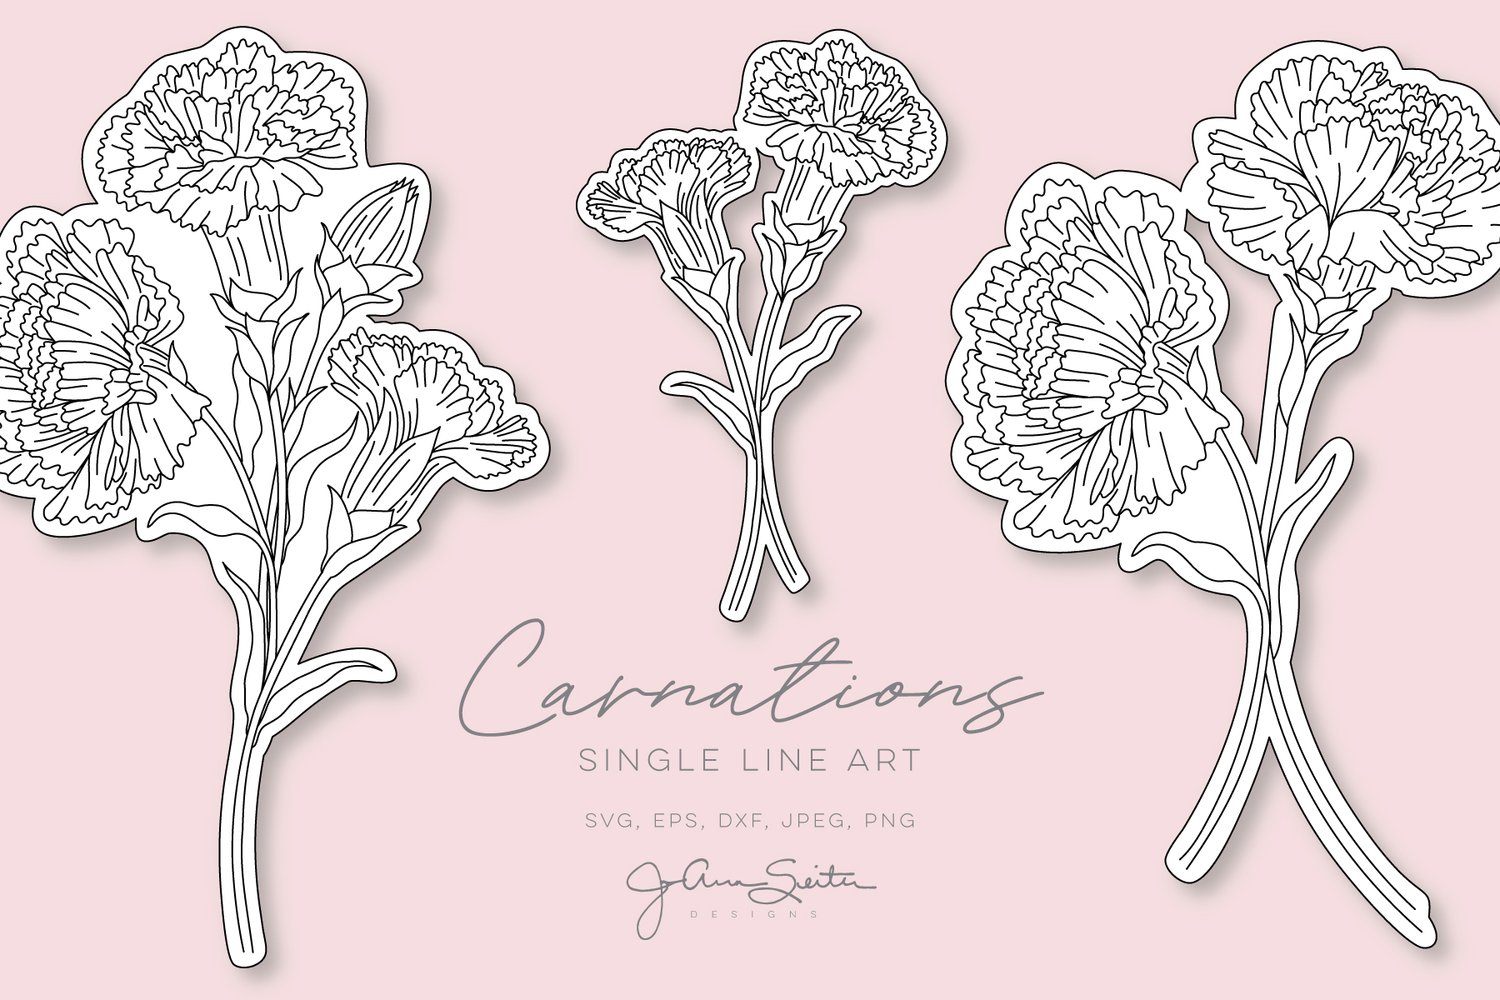 Carnation Flower Single Line SVG File, Botanical Floral Clip Art